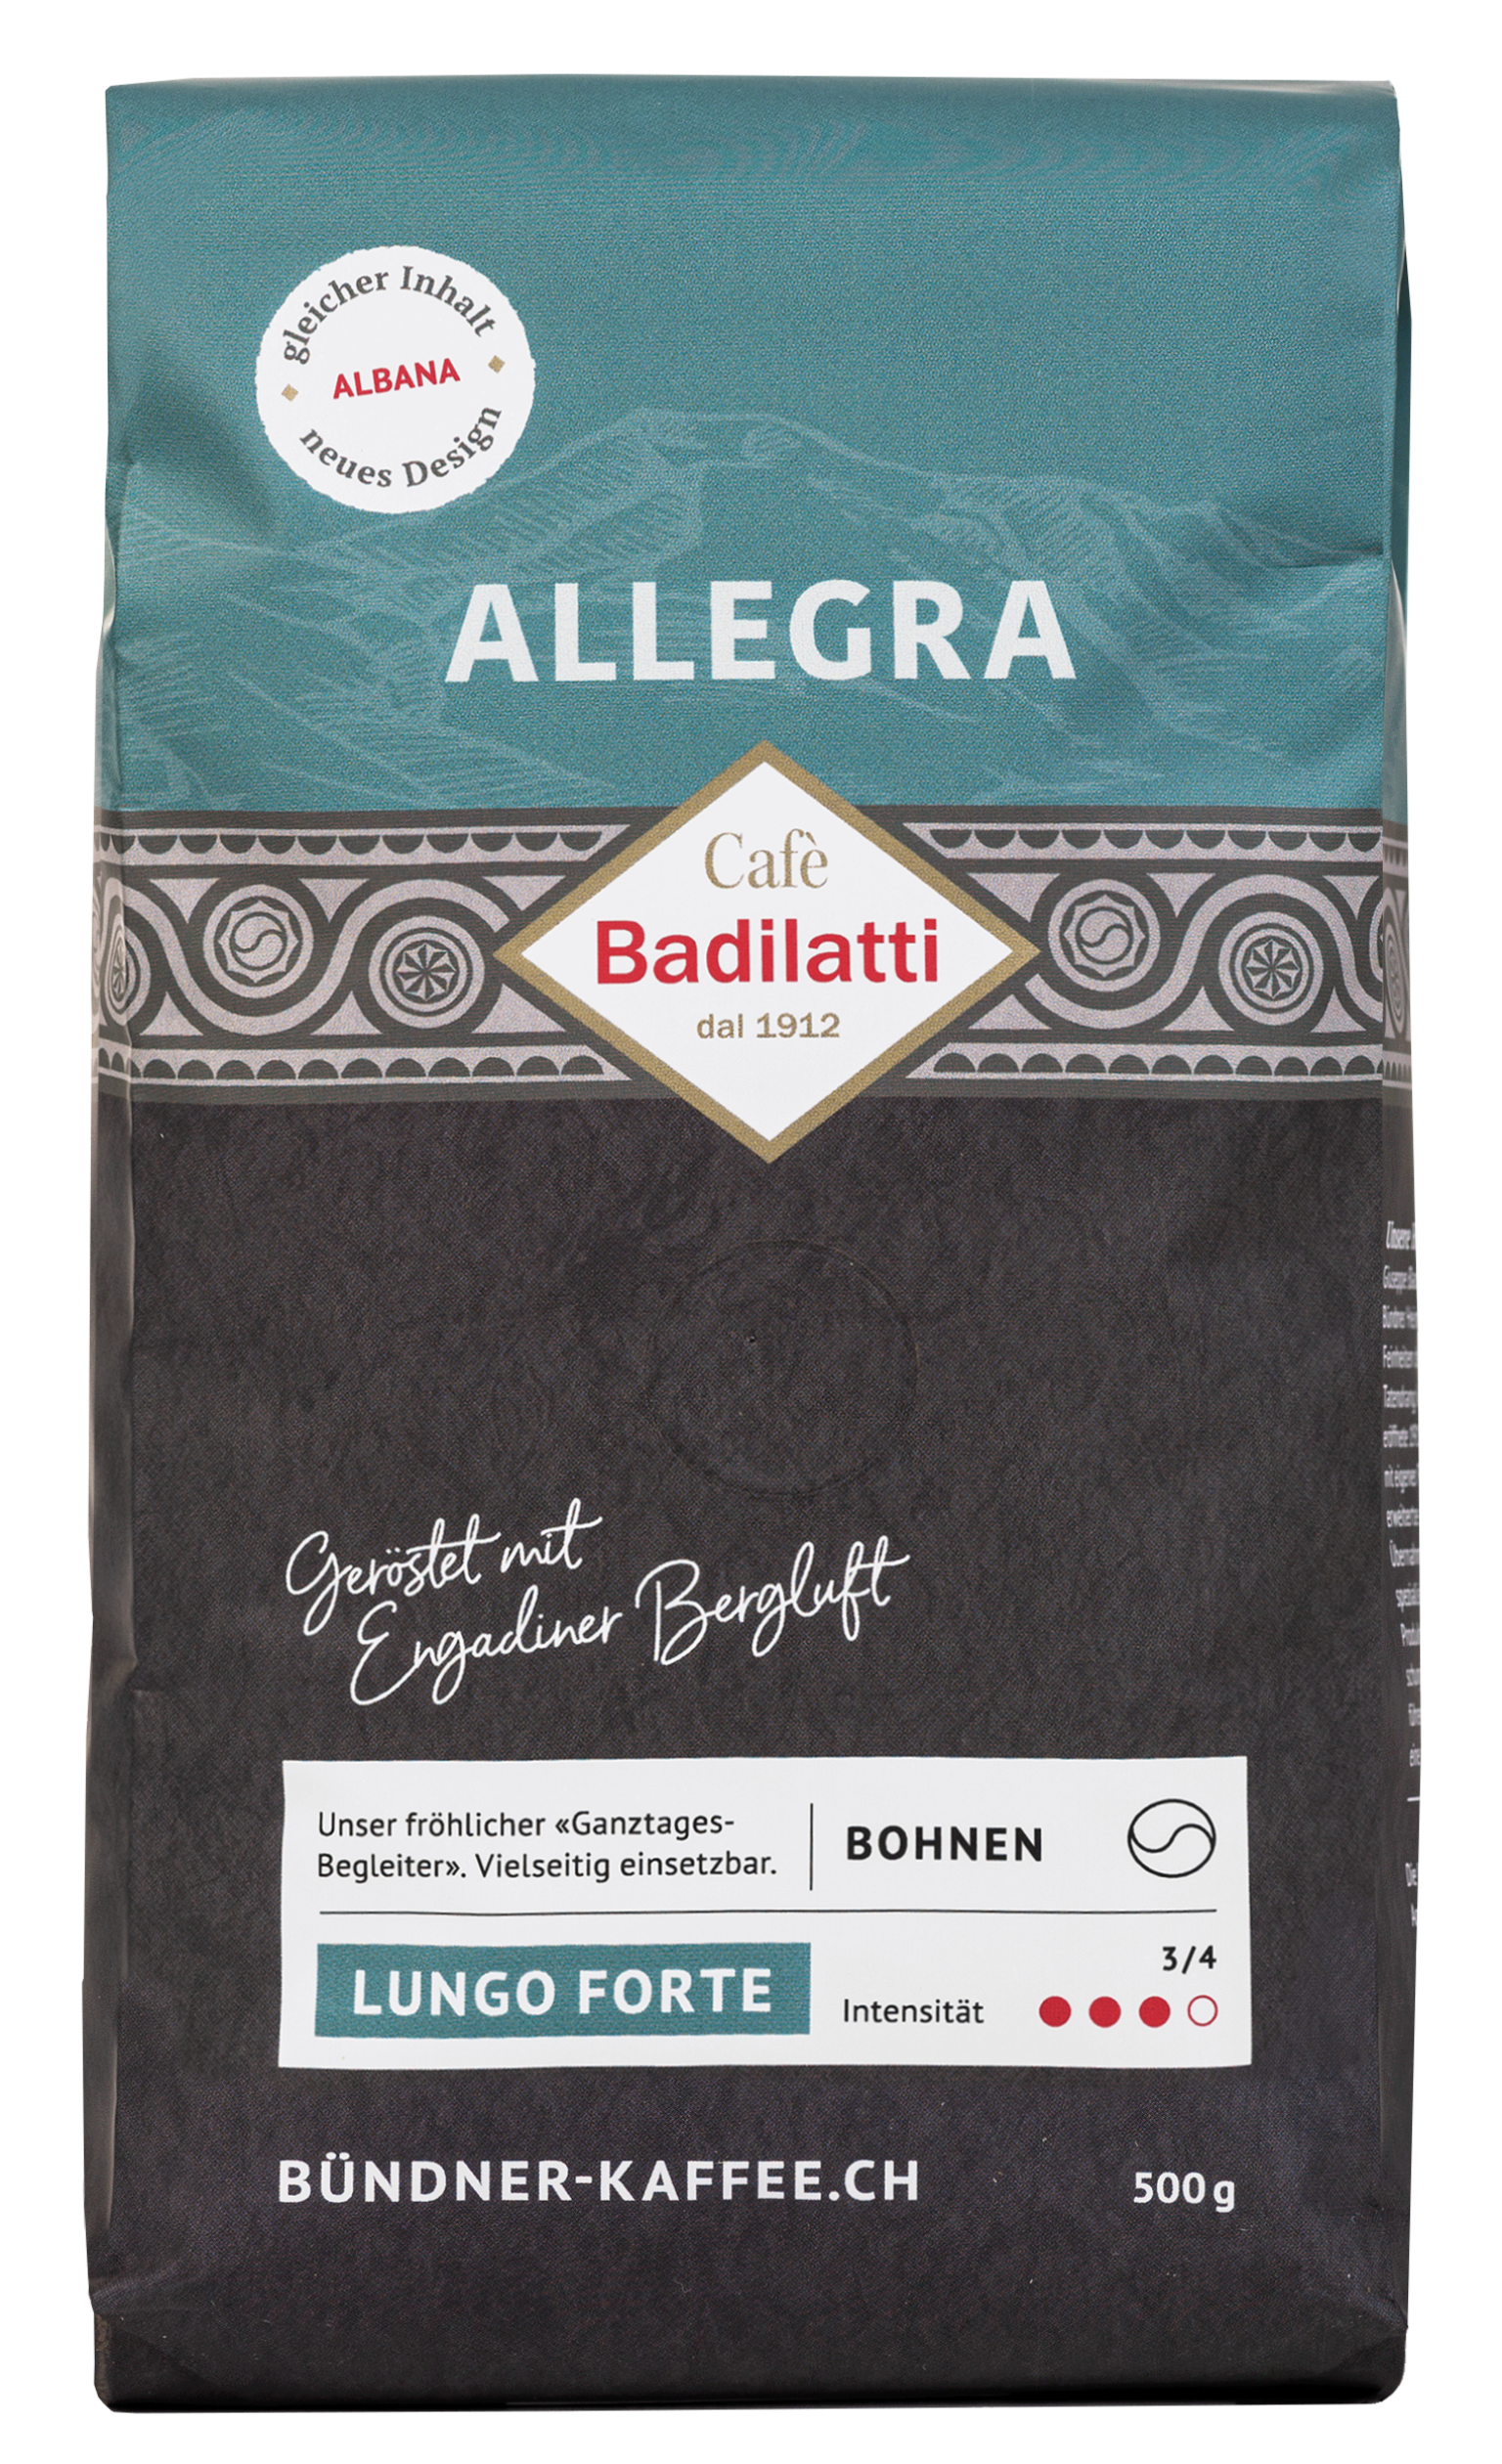 500g Allegra Kaffeebohnen von Cafè Badilatti.